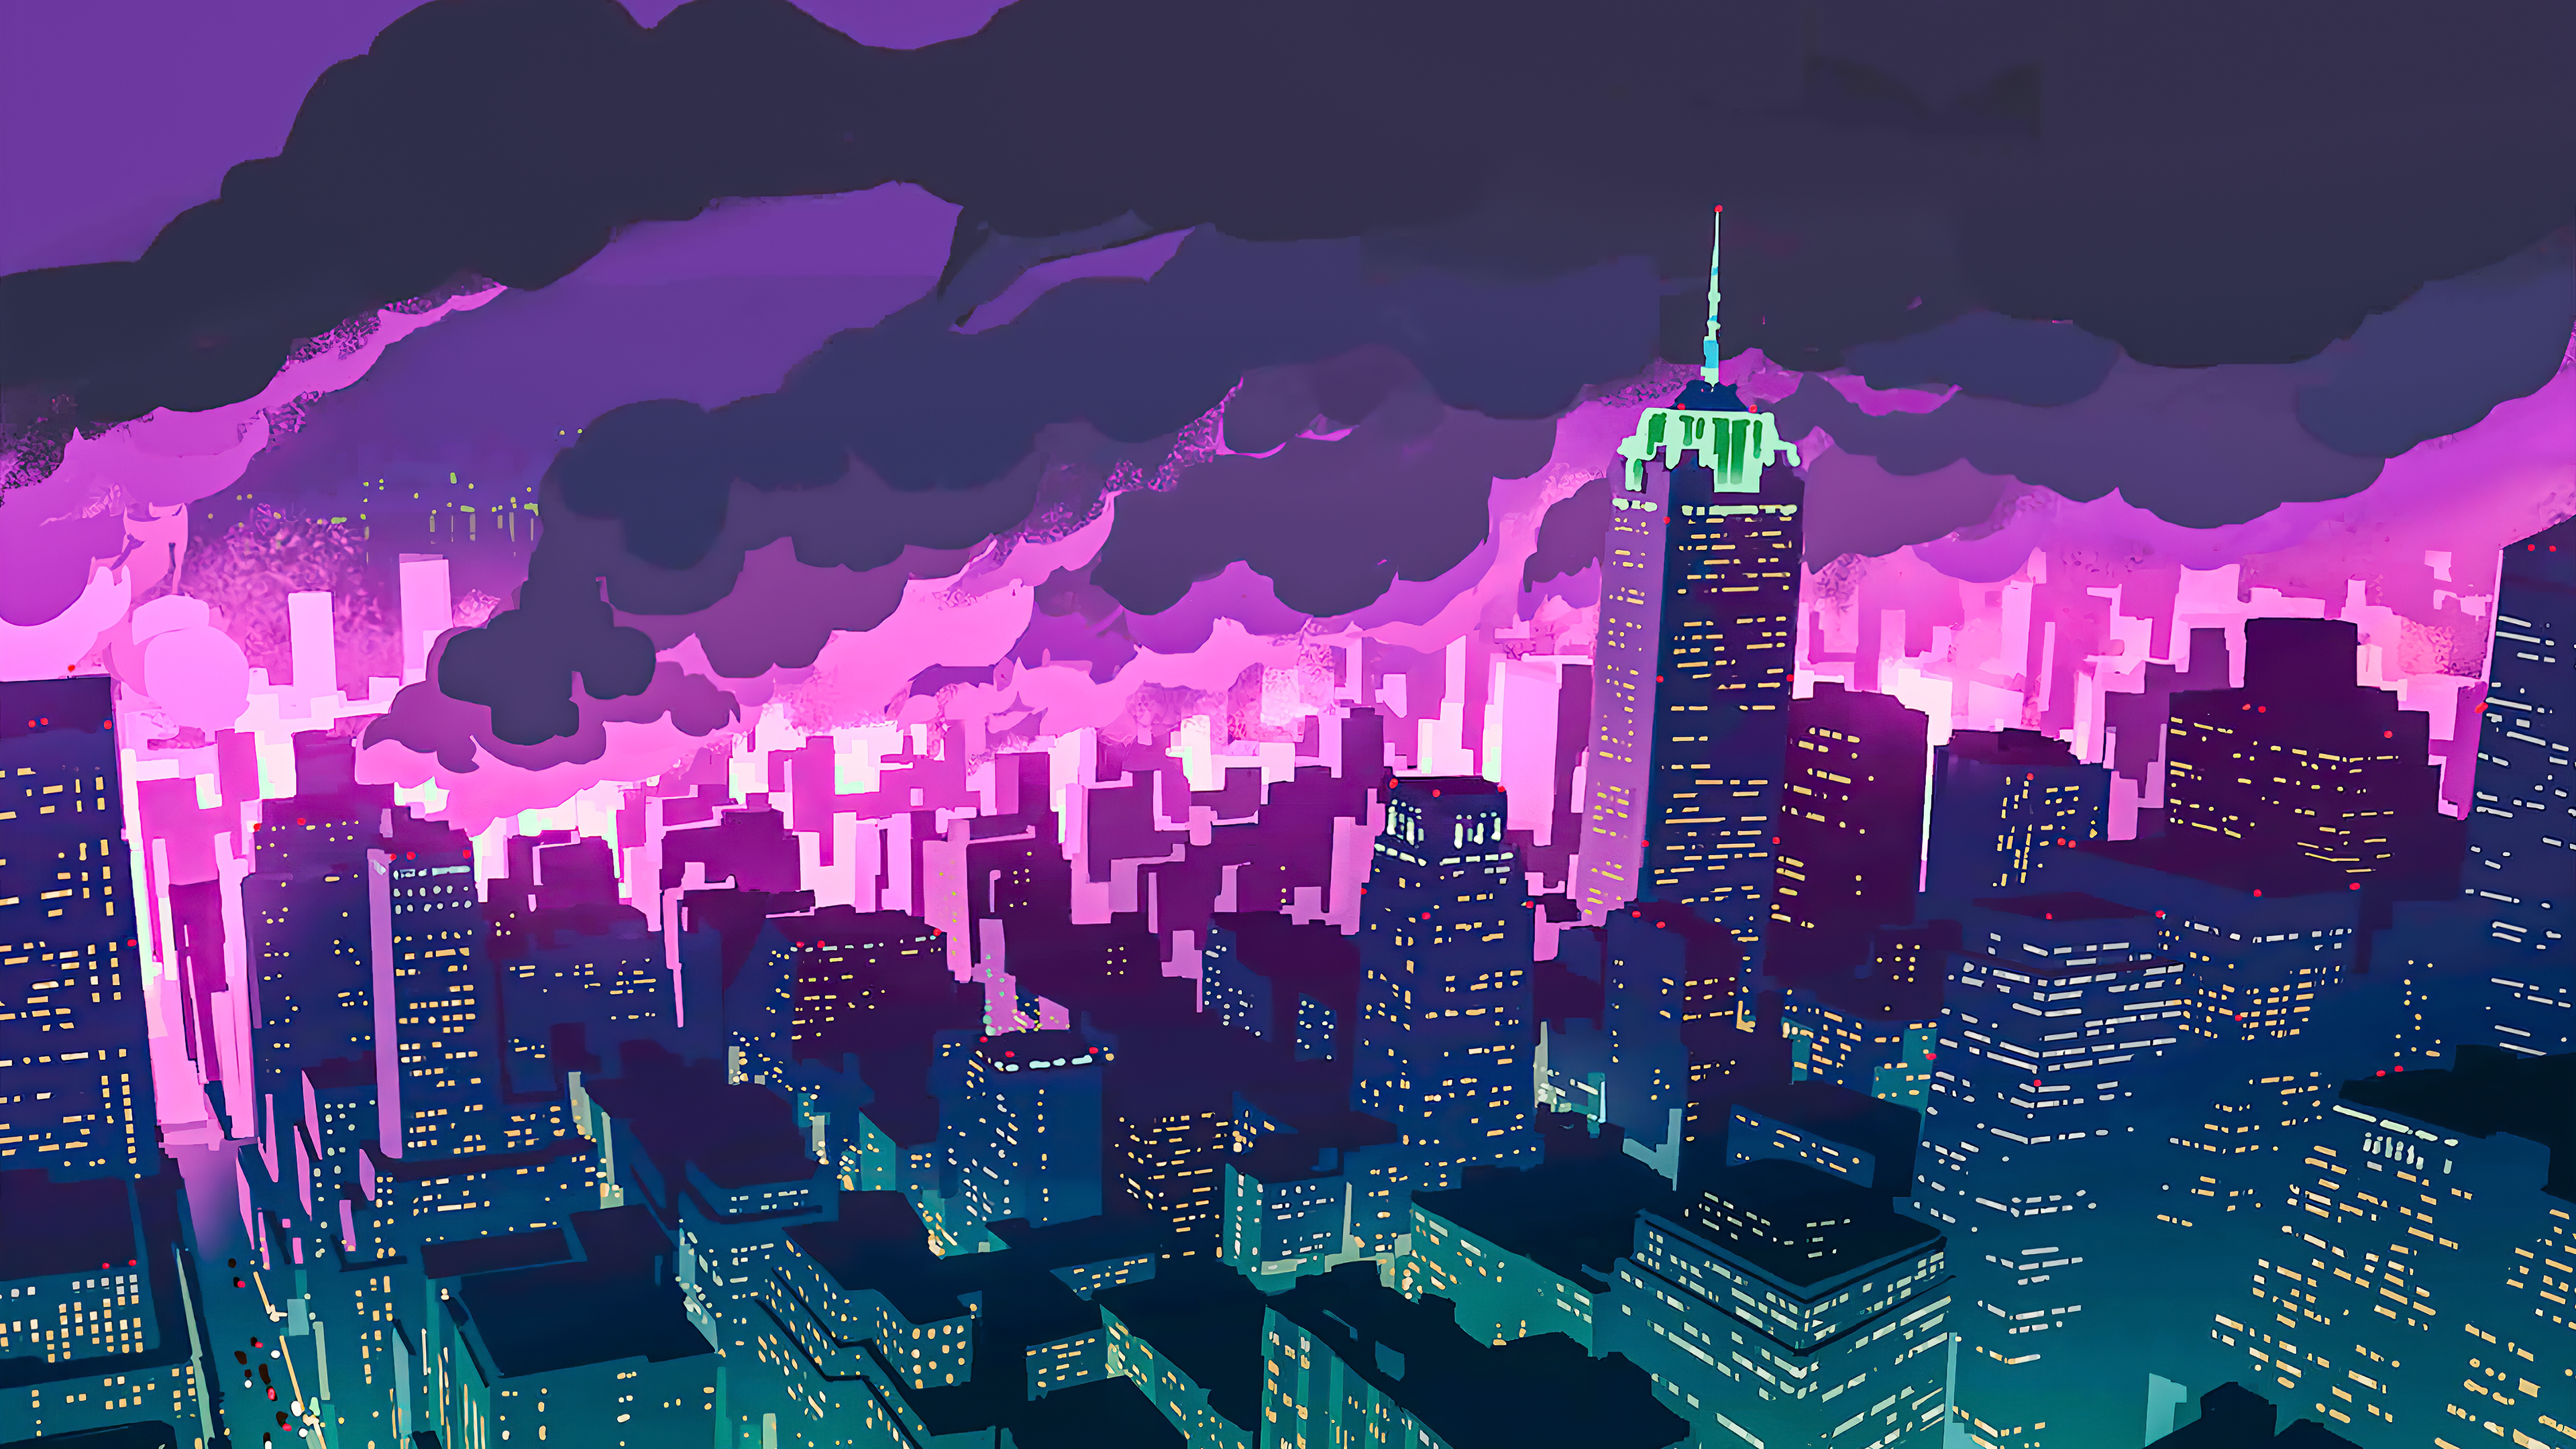 Promare Night City [3840x2160]